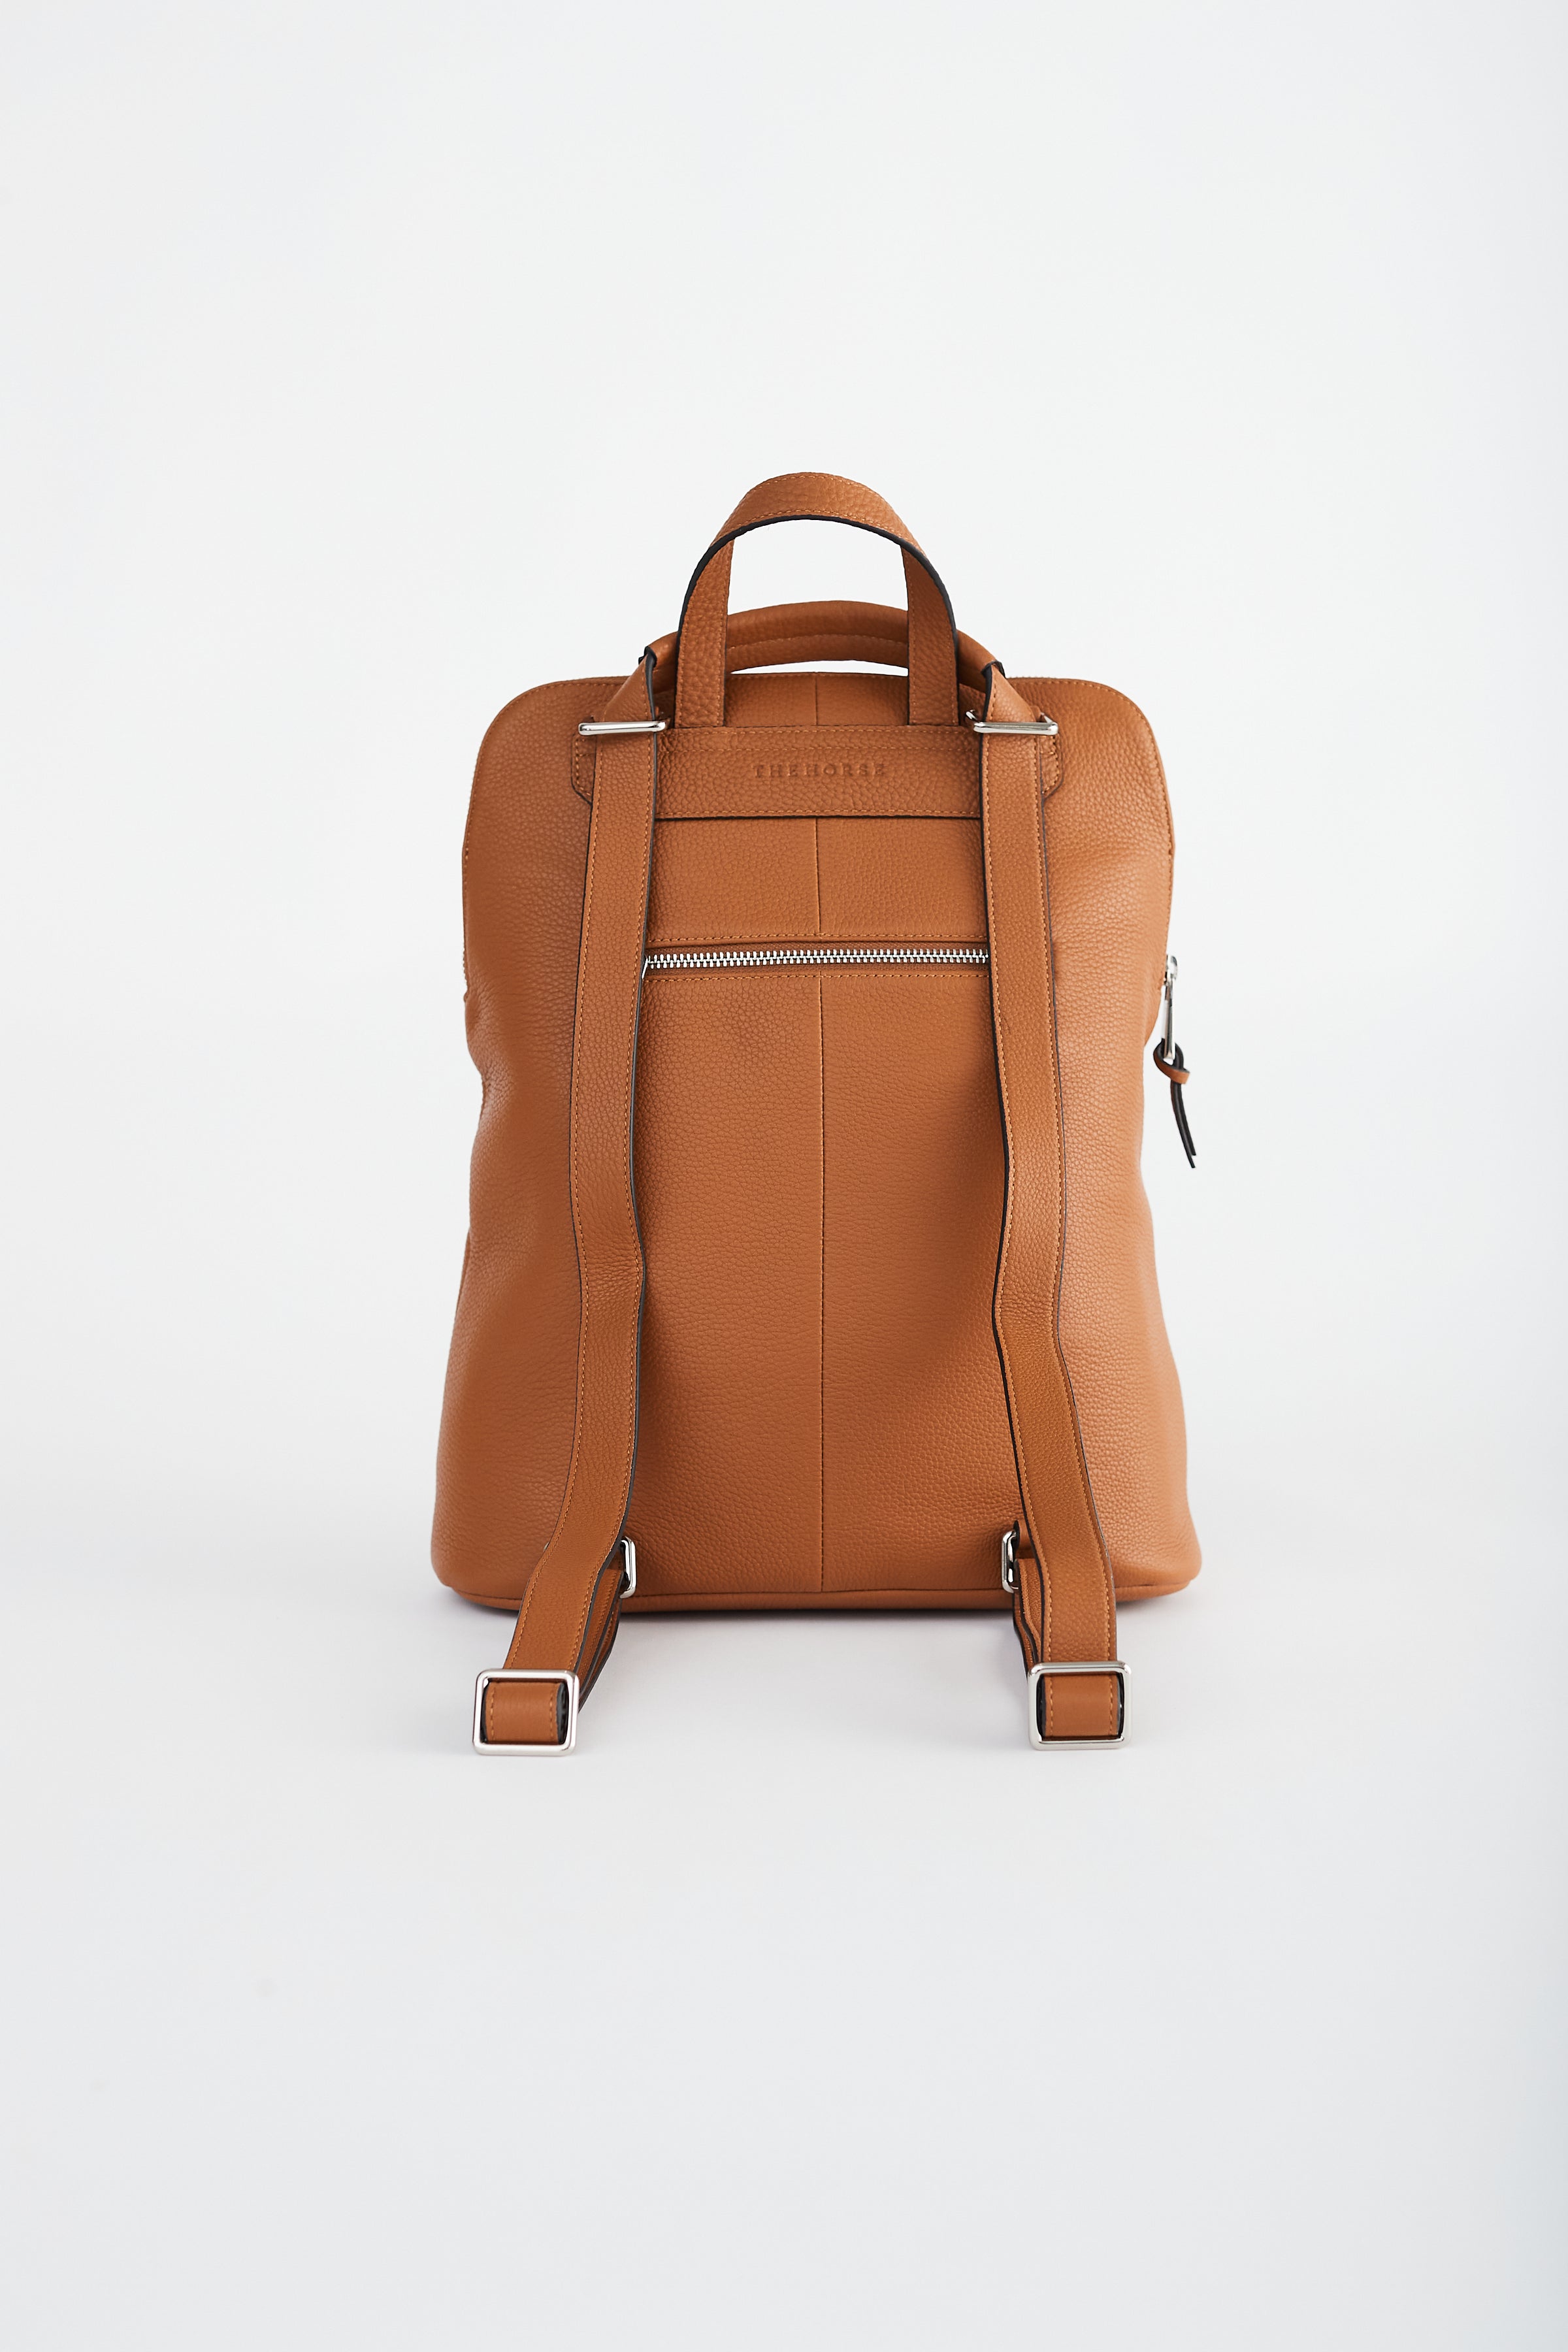 Backpack: Tan